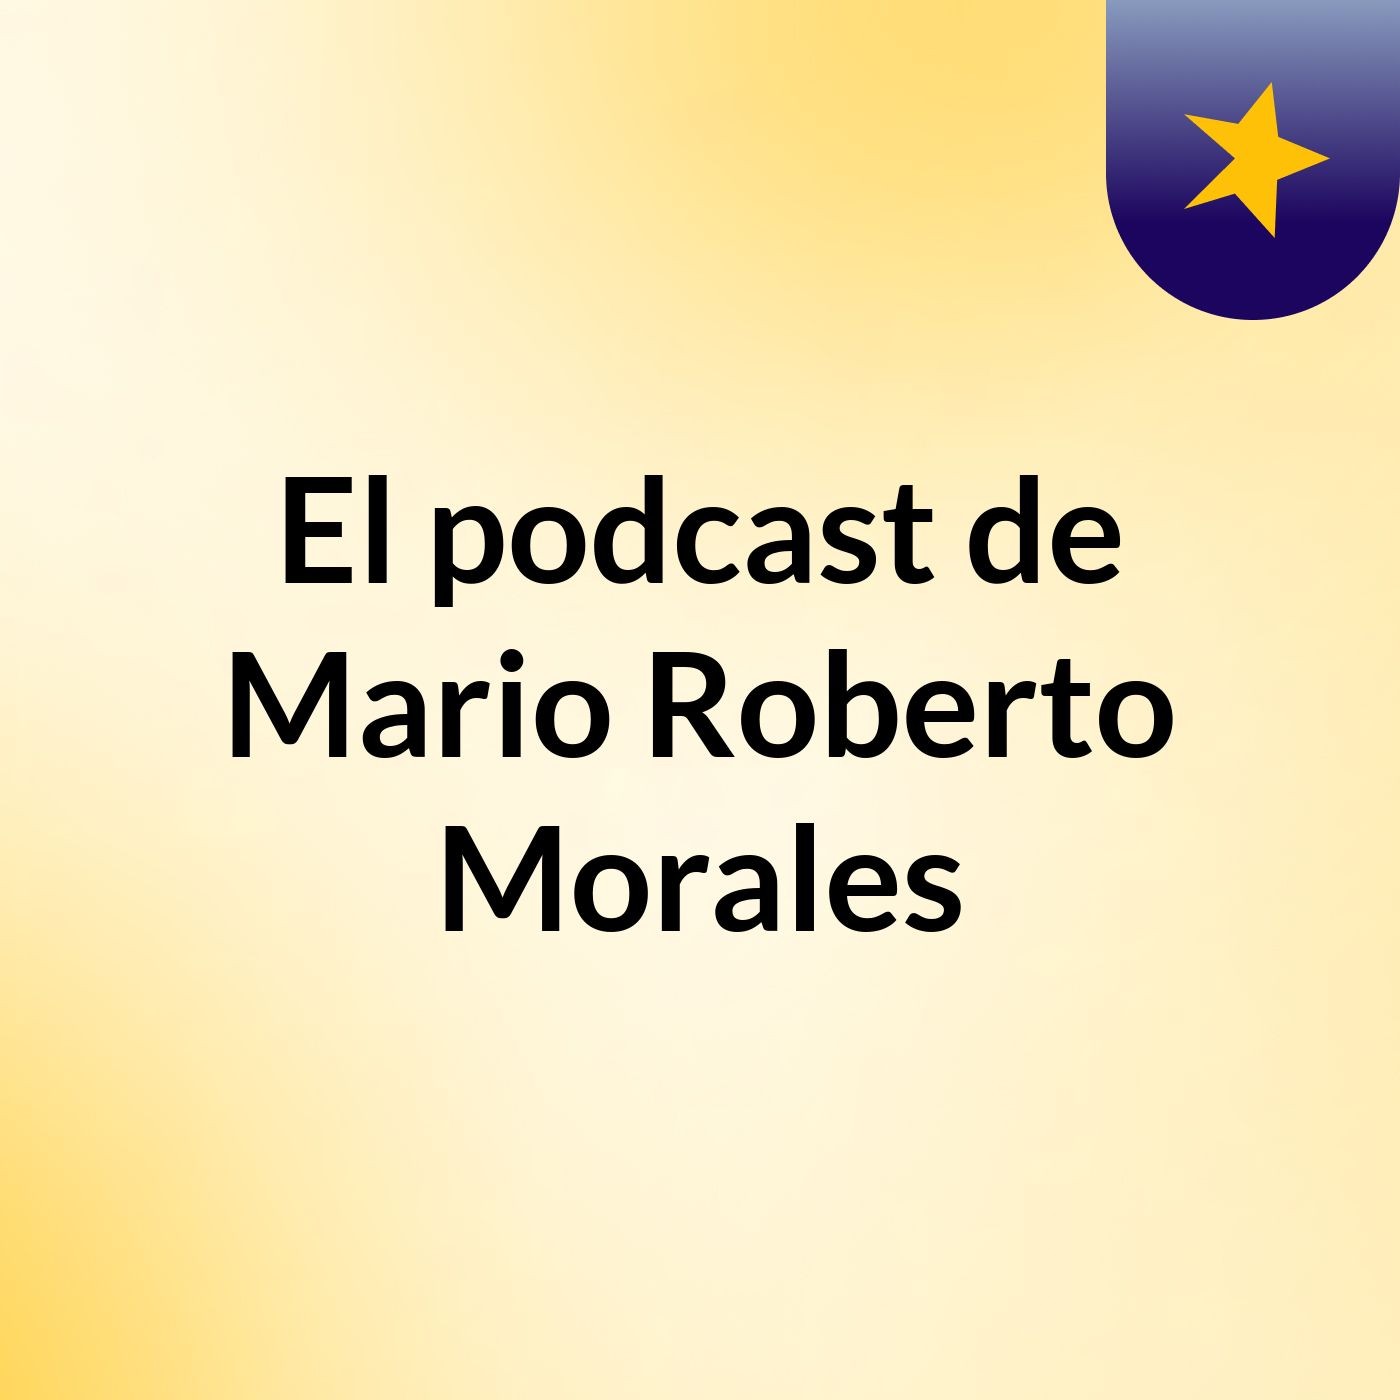 El podcast de Mario Roberto Morales